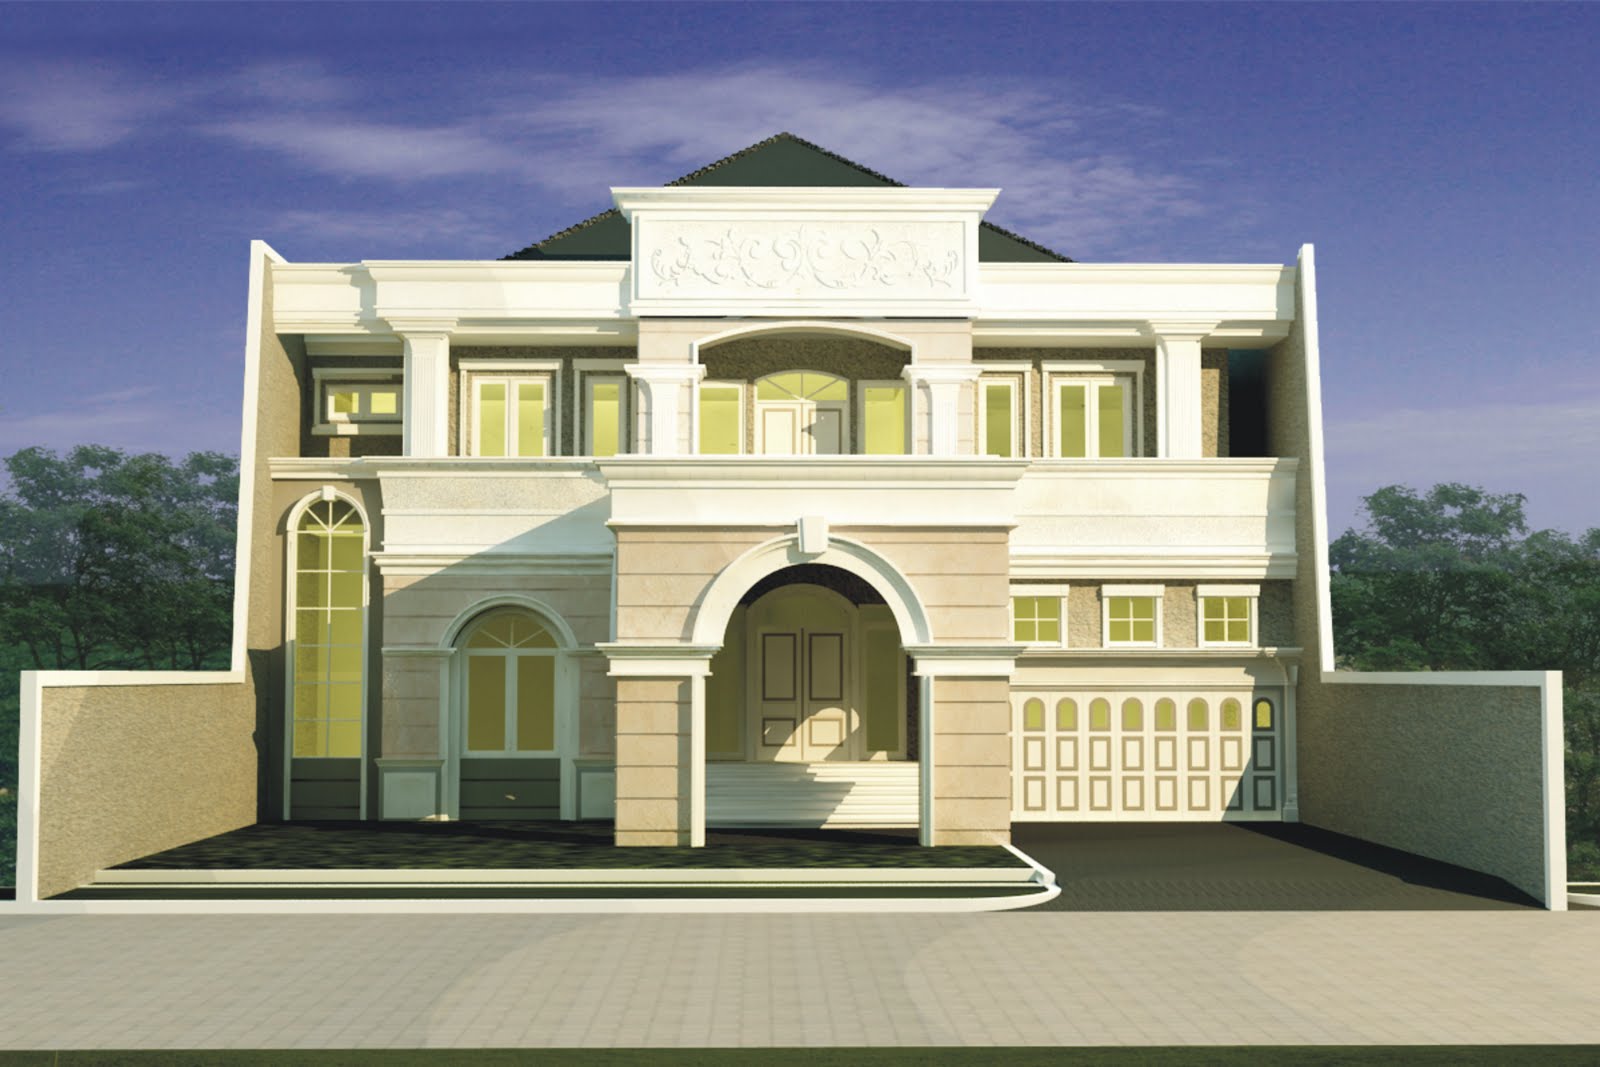  Rumah  dengan gaya  eksterior berkonsep klasik  triknews